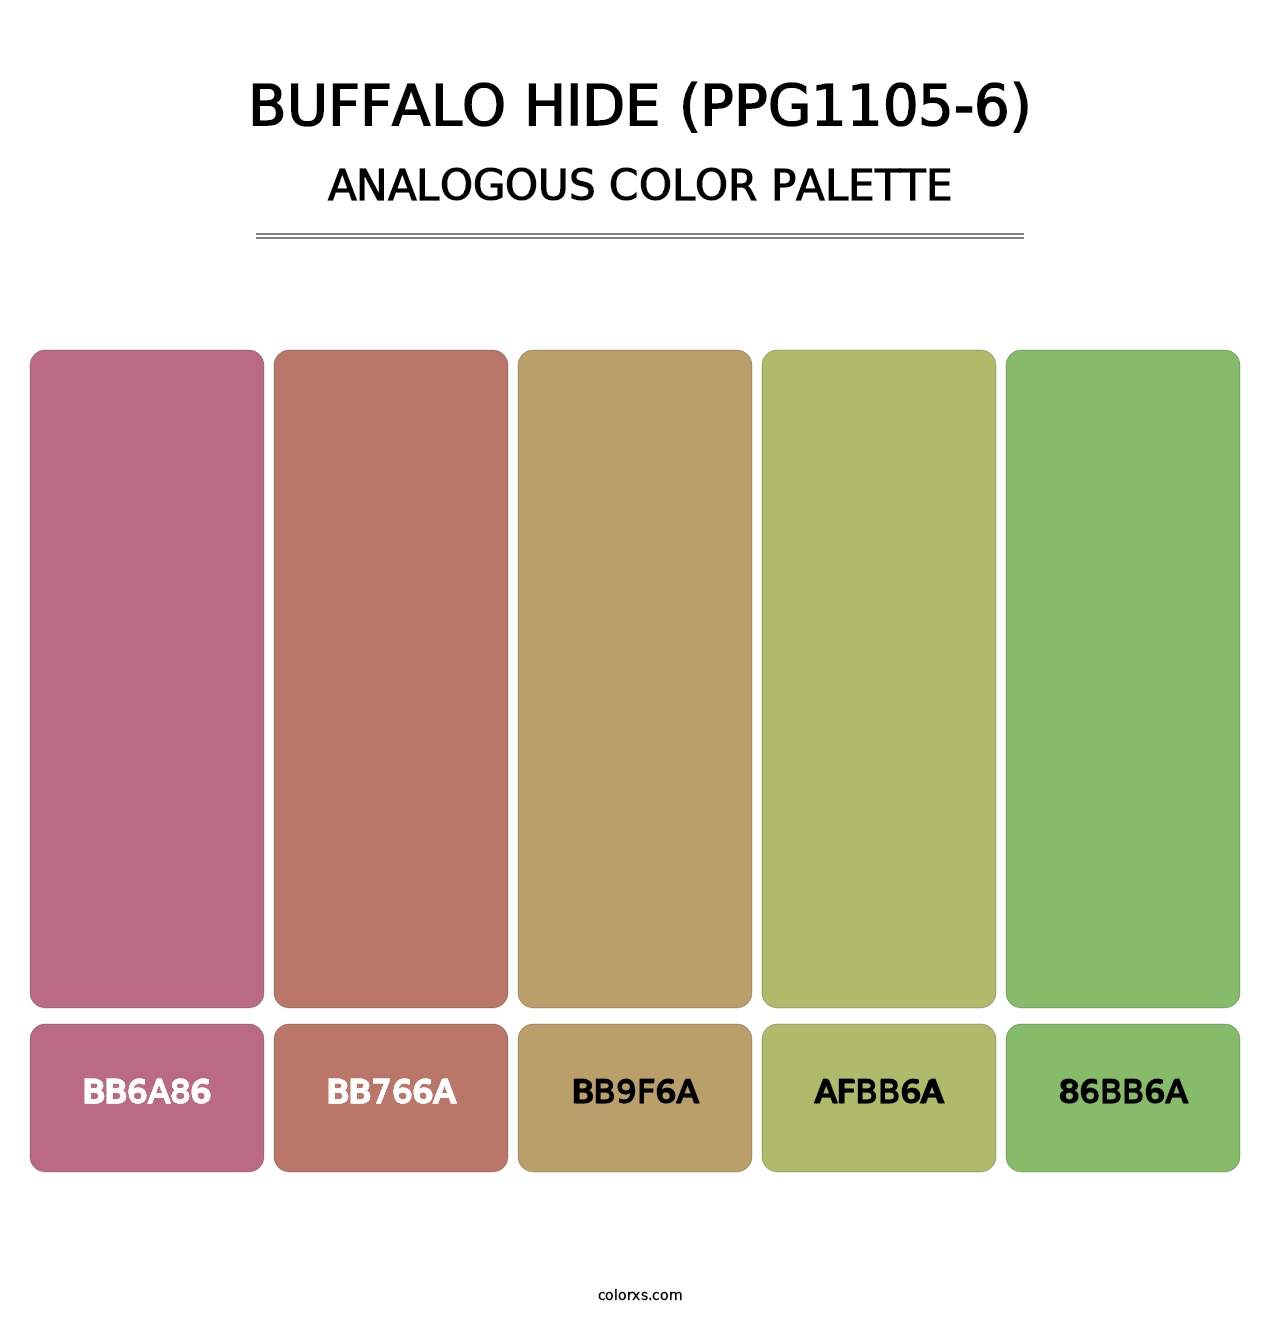 Buffalo Hide (PPG1105-6) - Analogous Color Palette